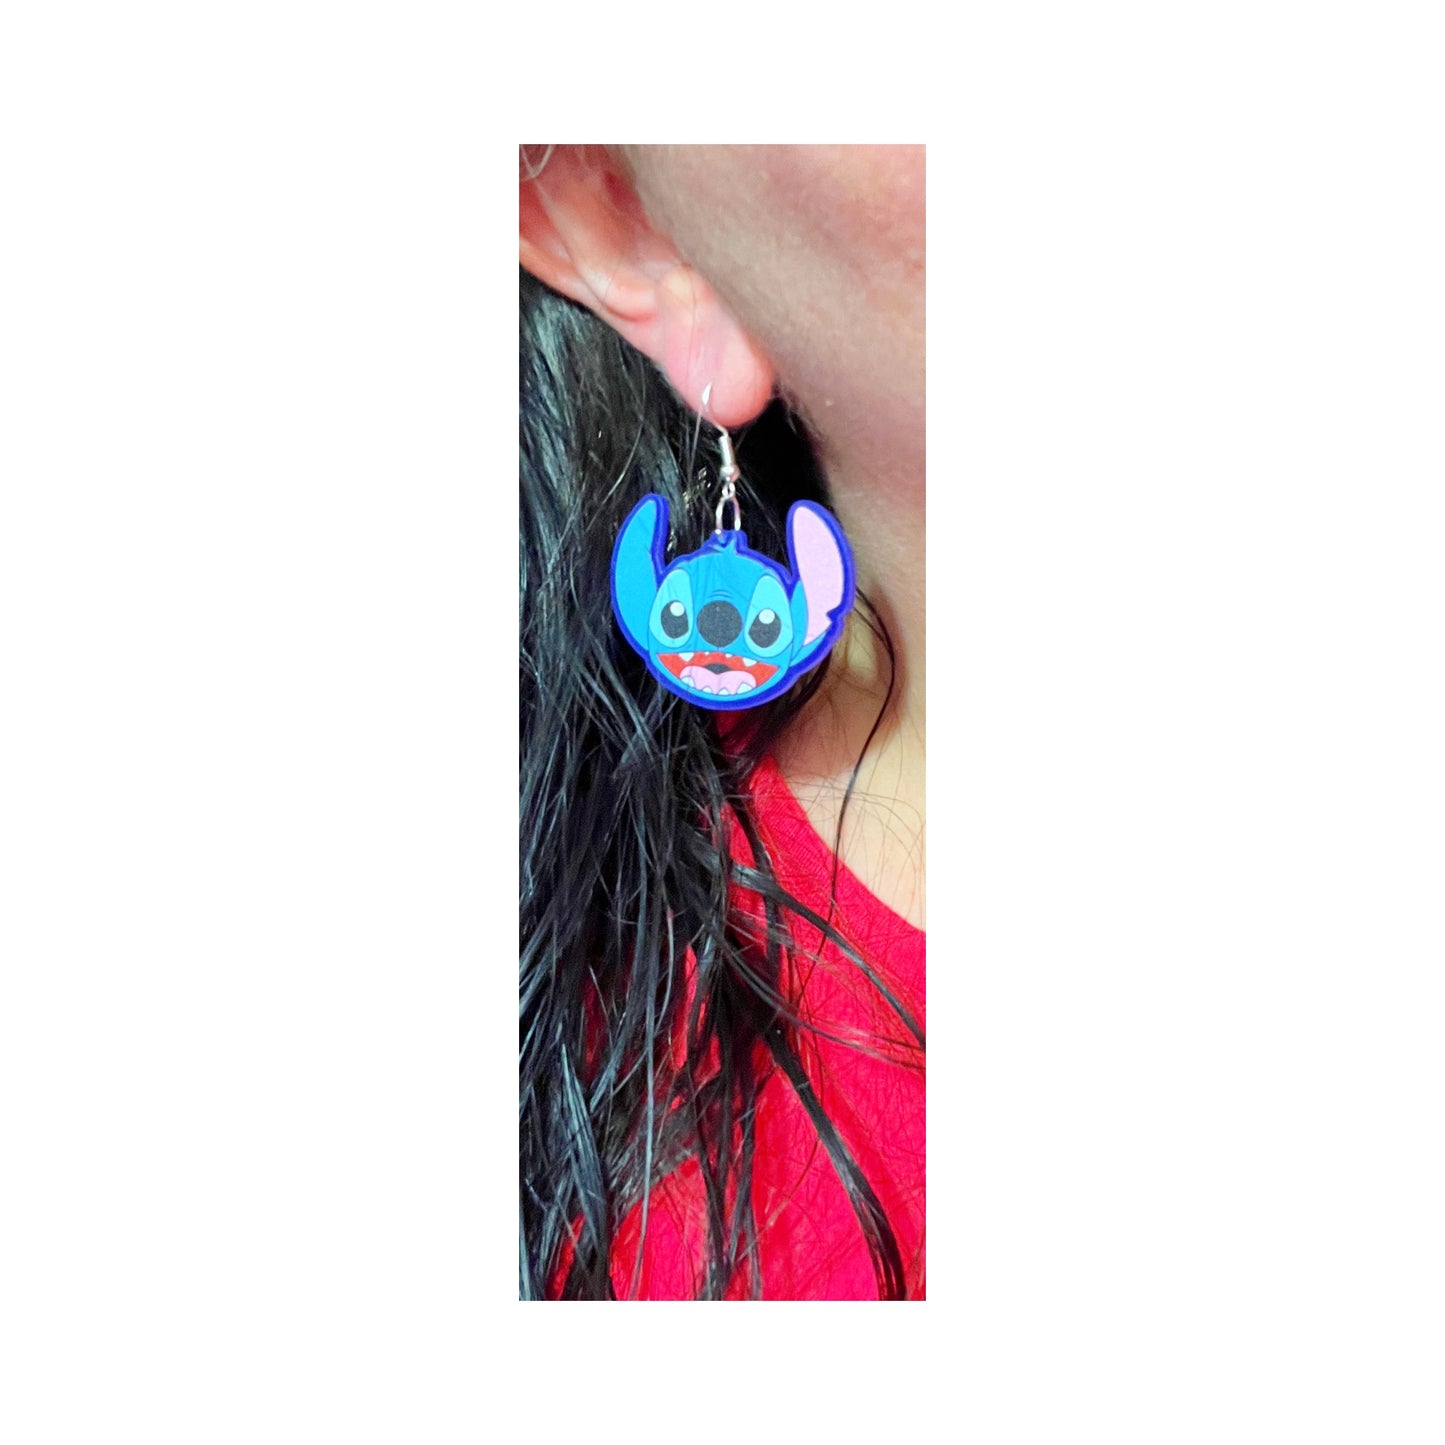 Stitch Acrylic Drop Earrings